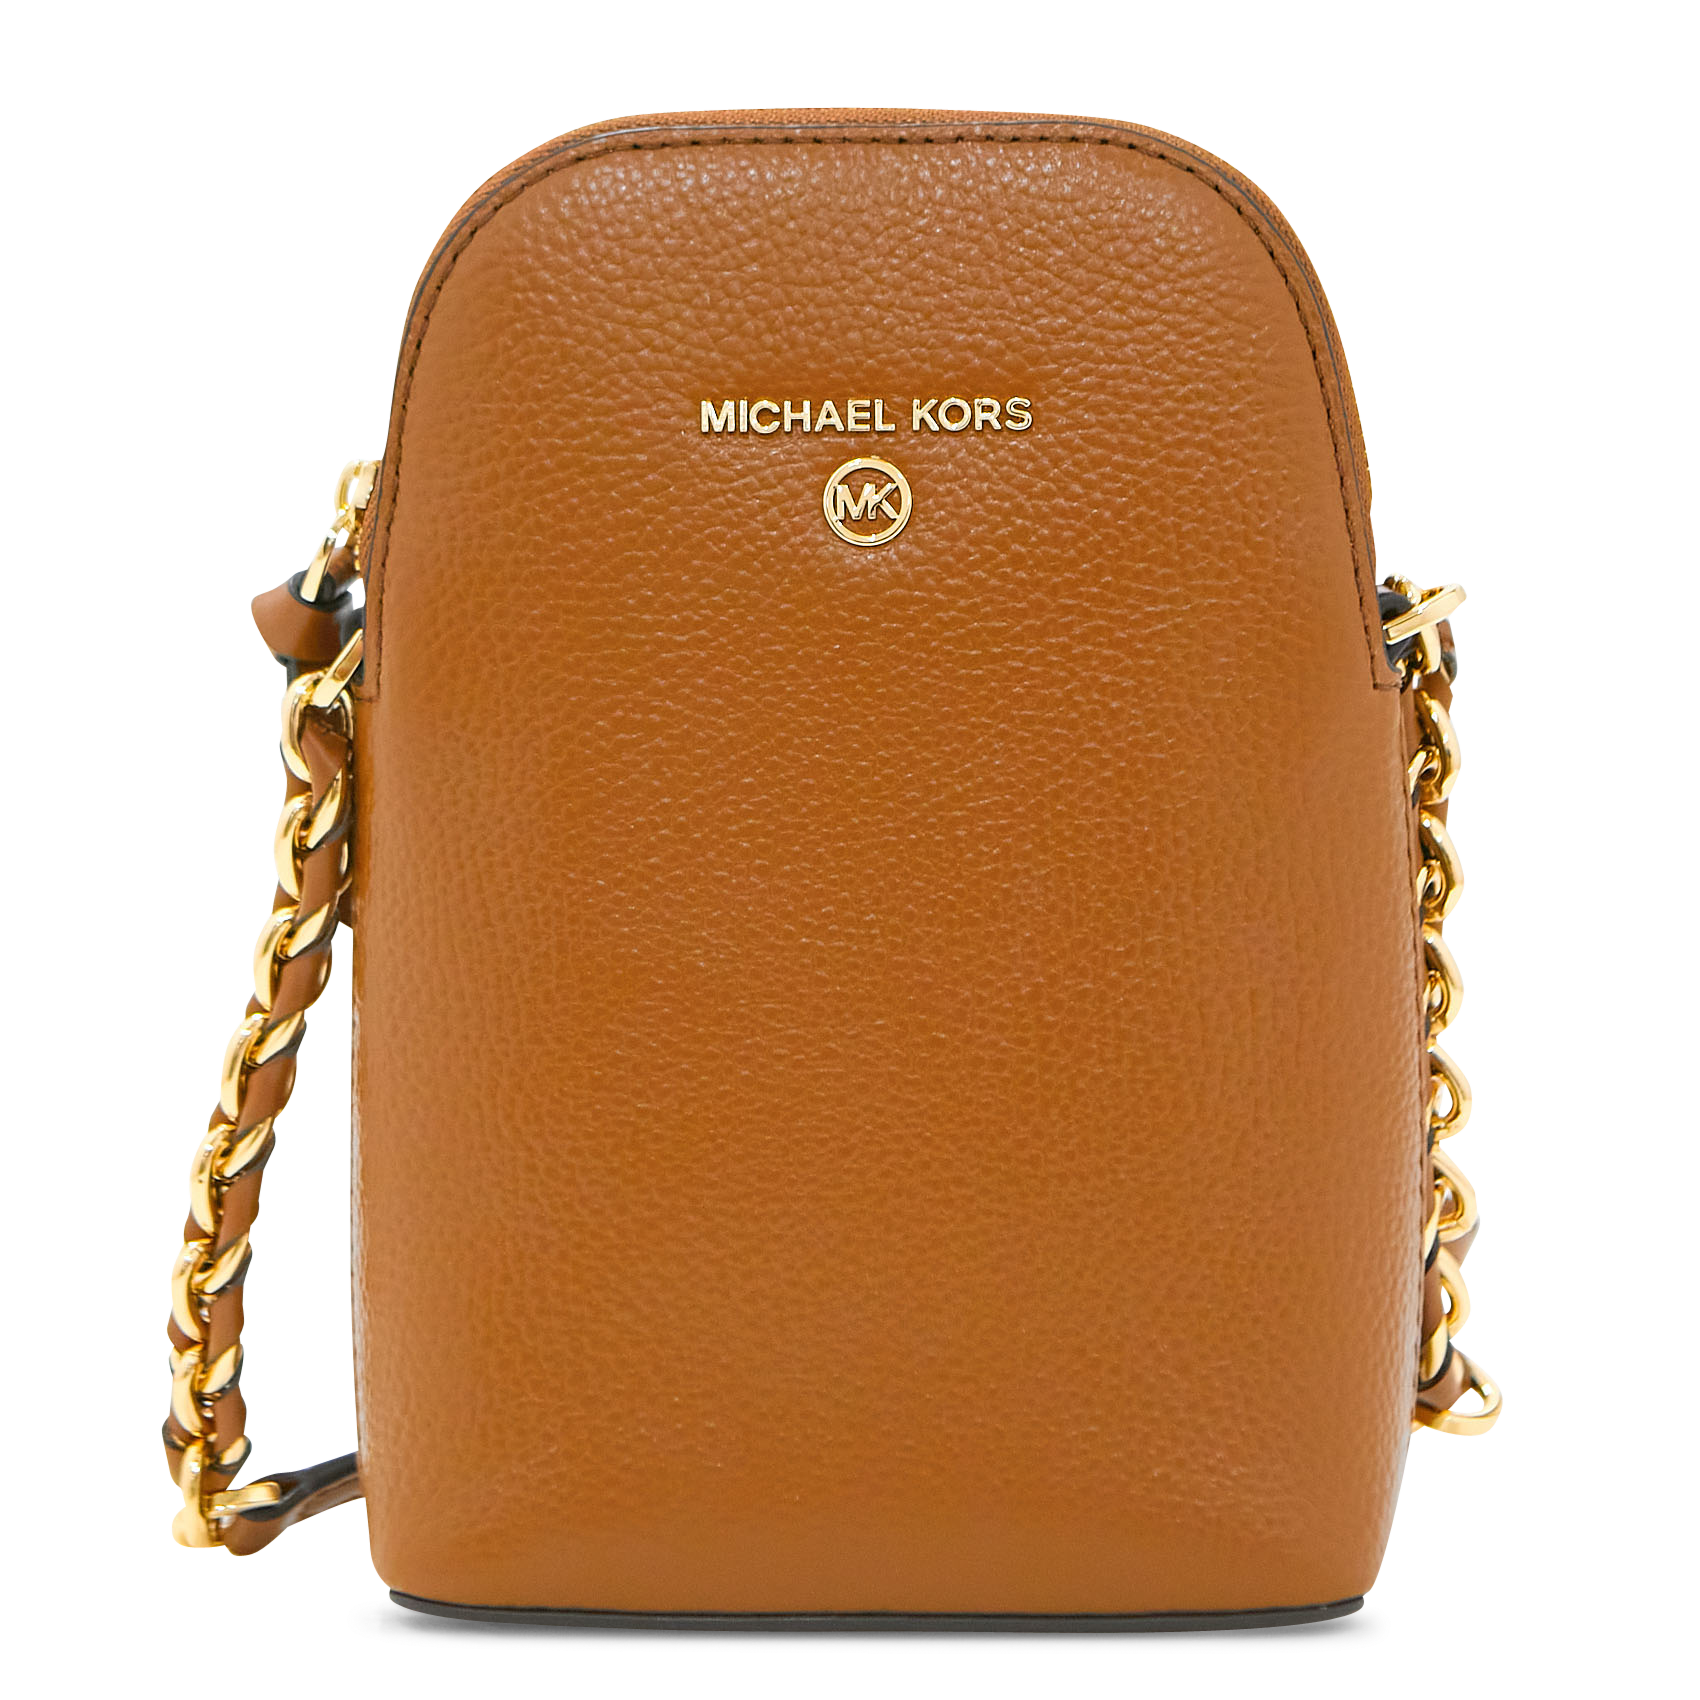 michael kors brown leather handbag